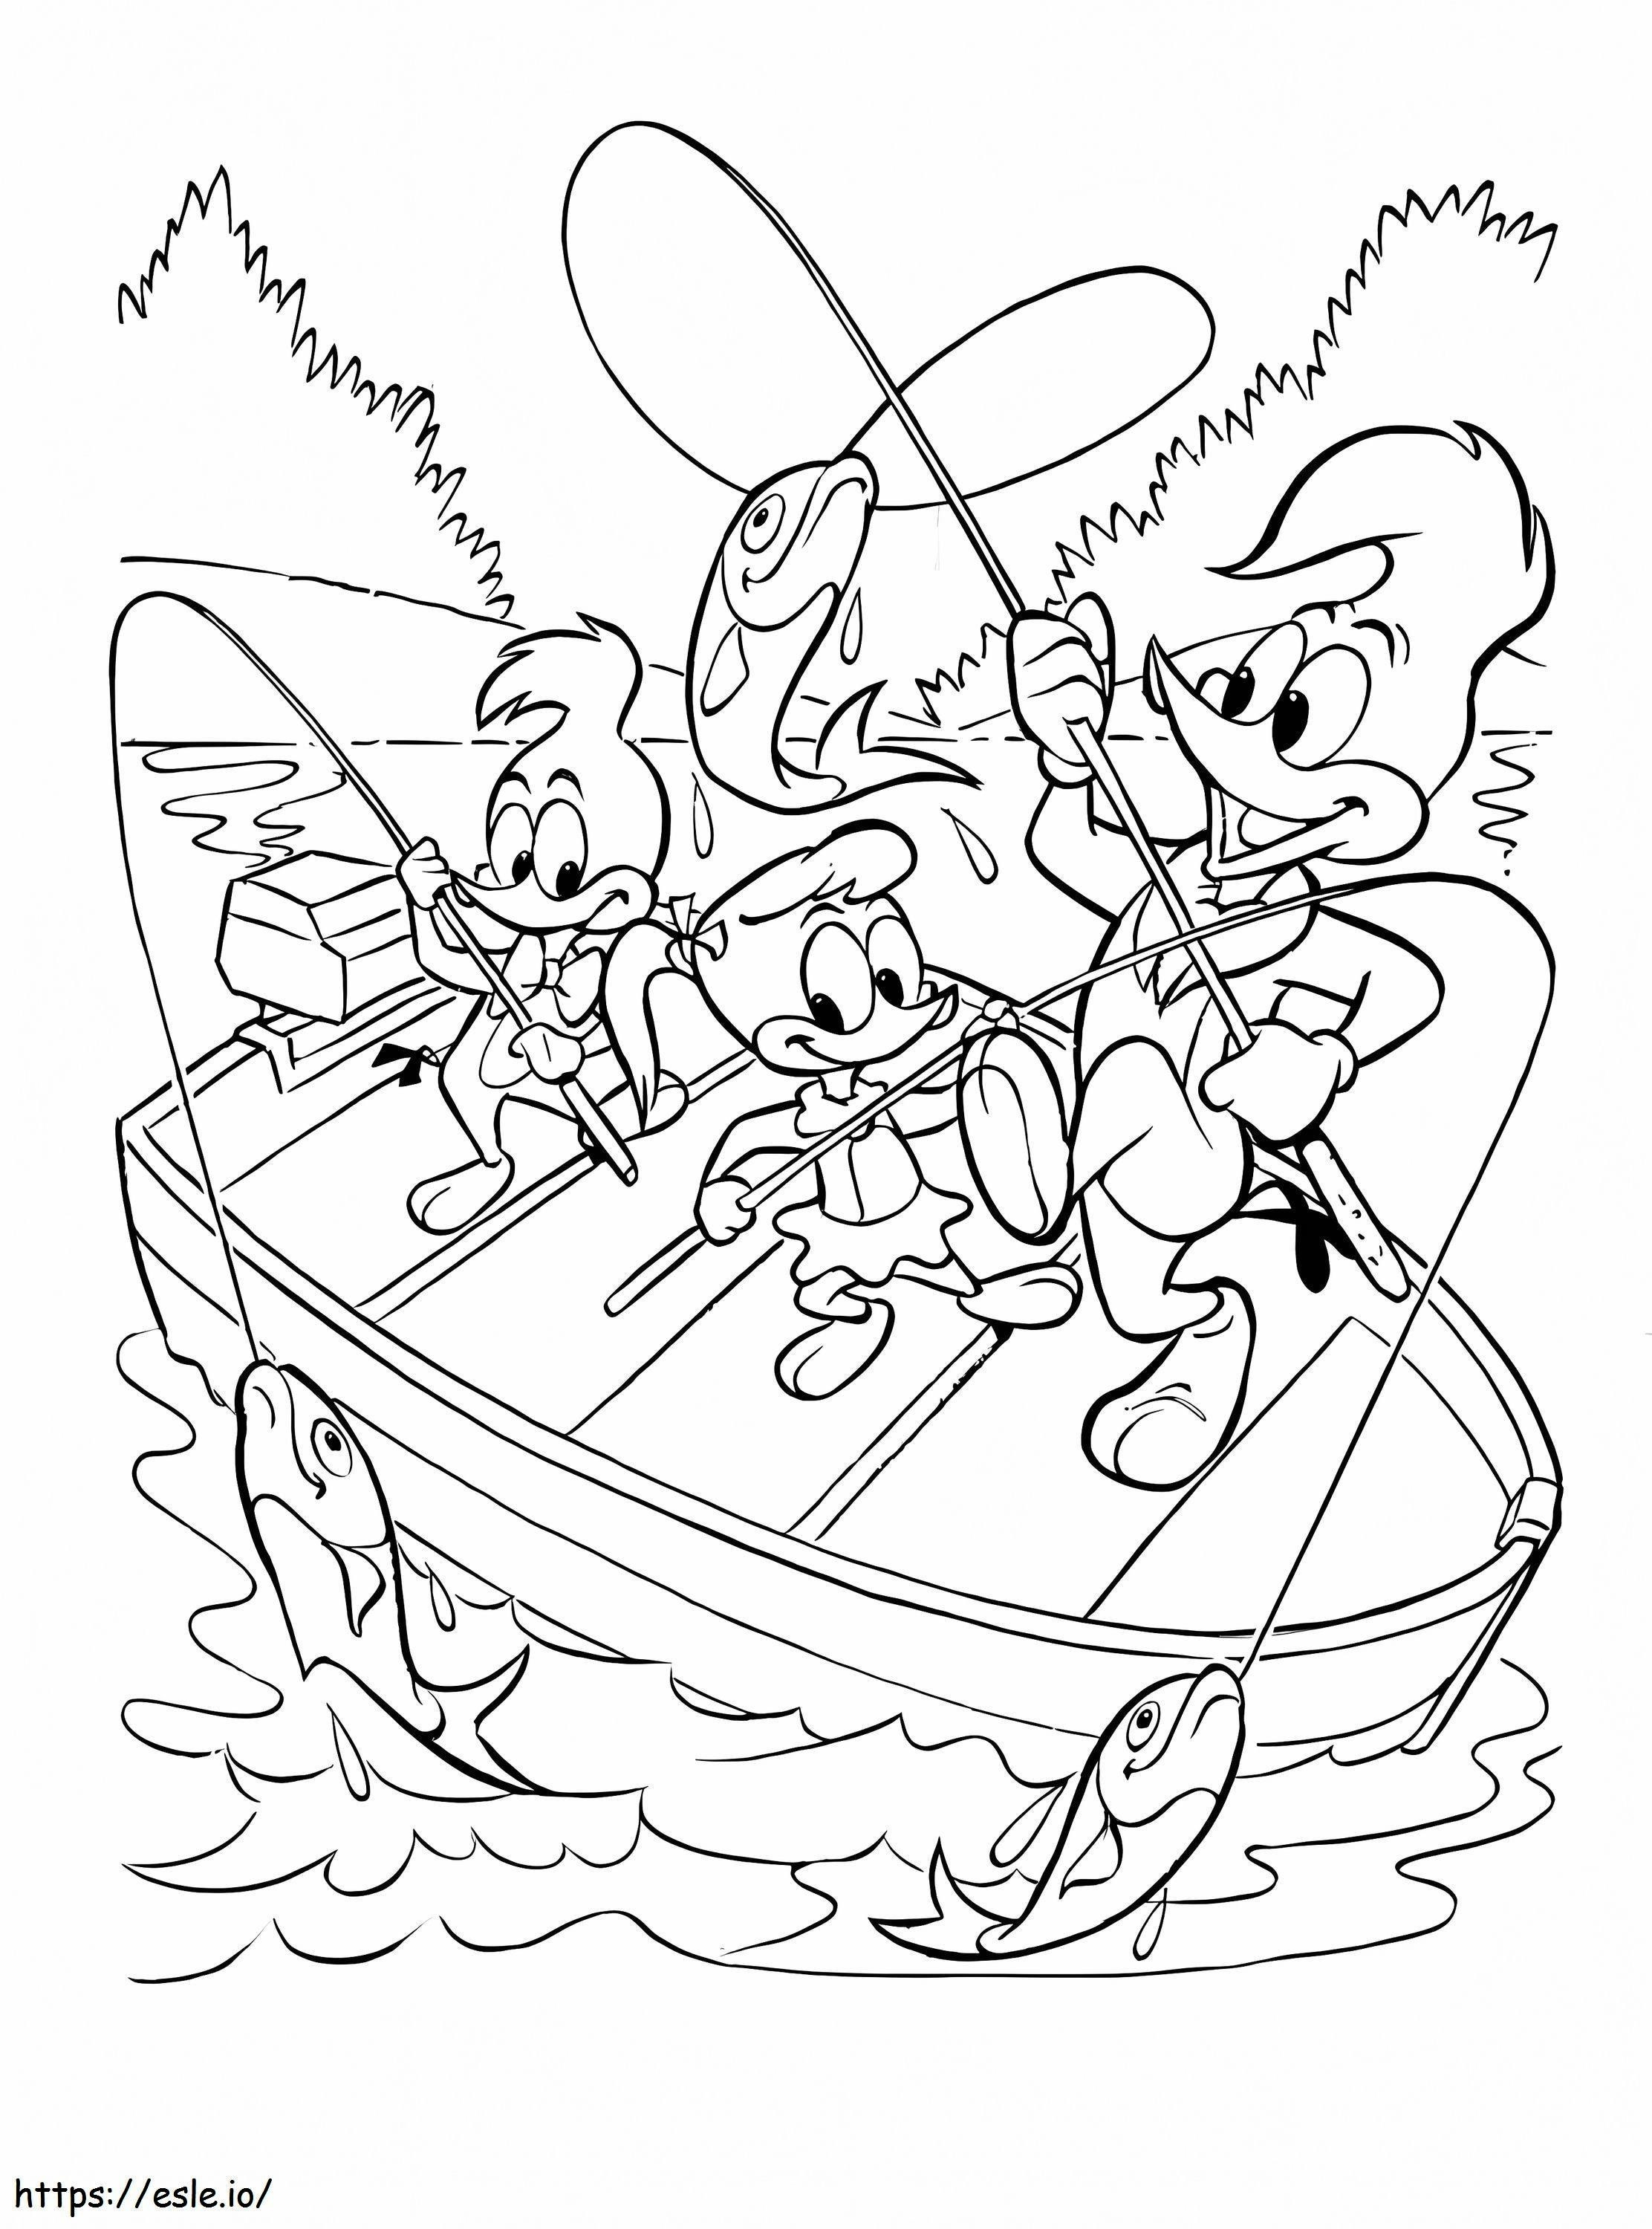 Woody și prietenii lui merg la pescuit de colorat